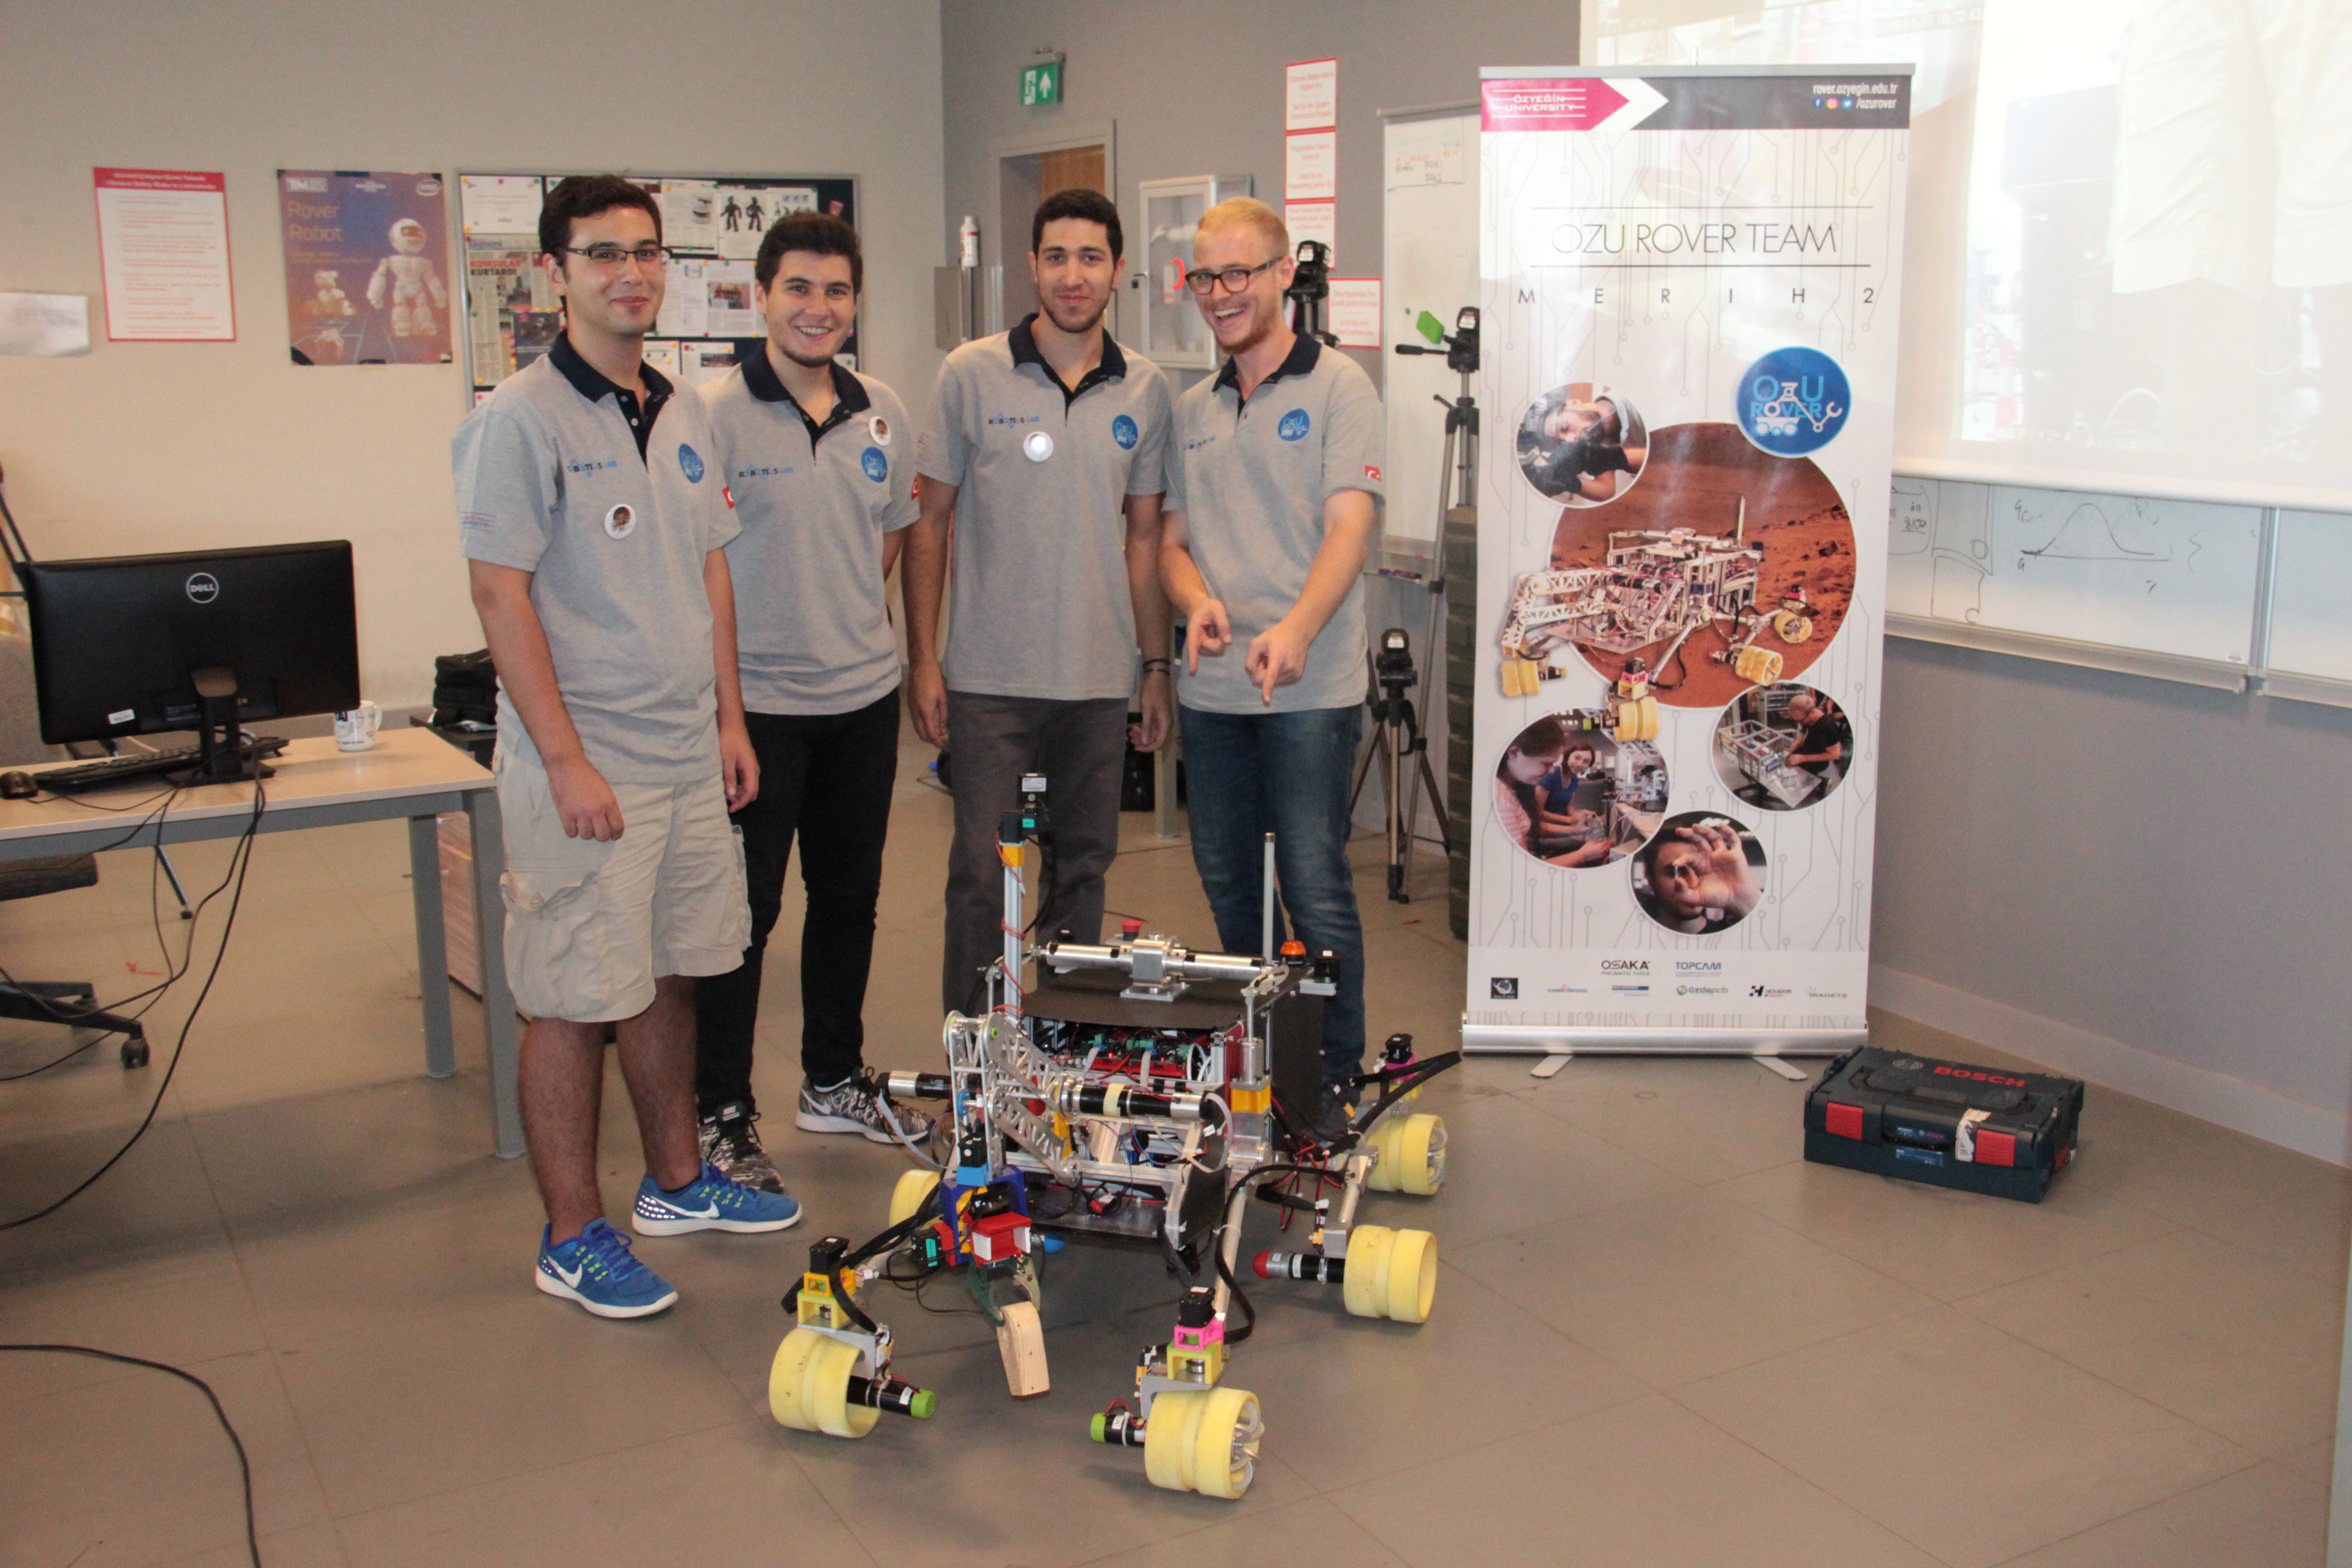 Özyeğin Üniversitesi öğrencilerinin tasarladığı mars robotu ikinci kez Türkiye’den katılan tek takım olarak Polonya’da yarışacak-1137